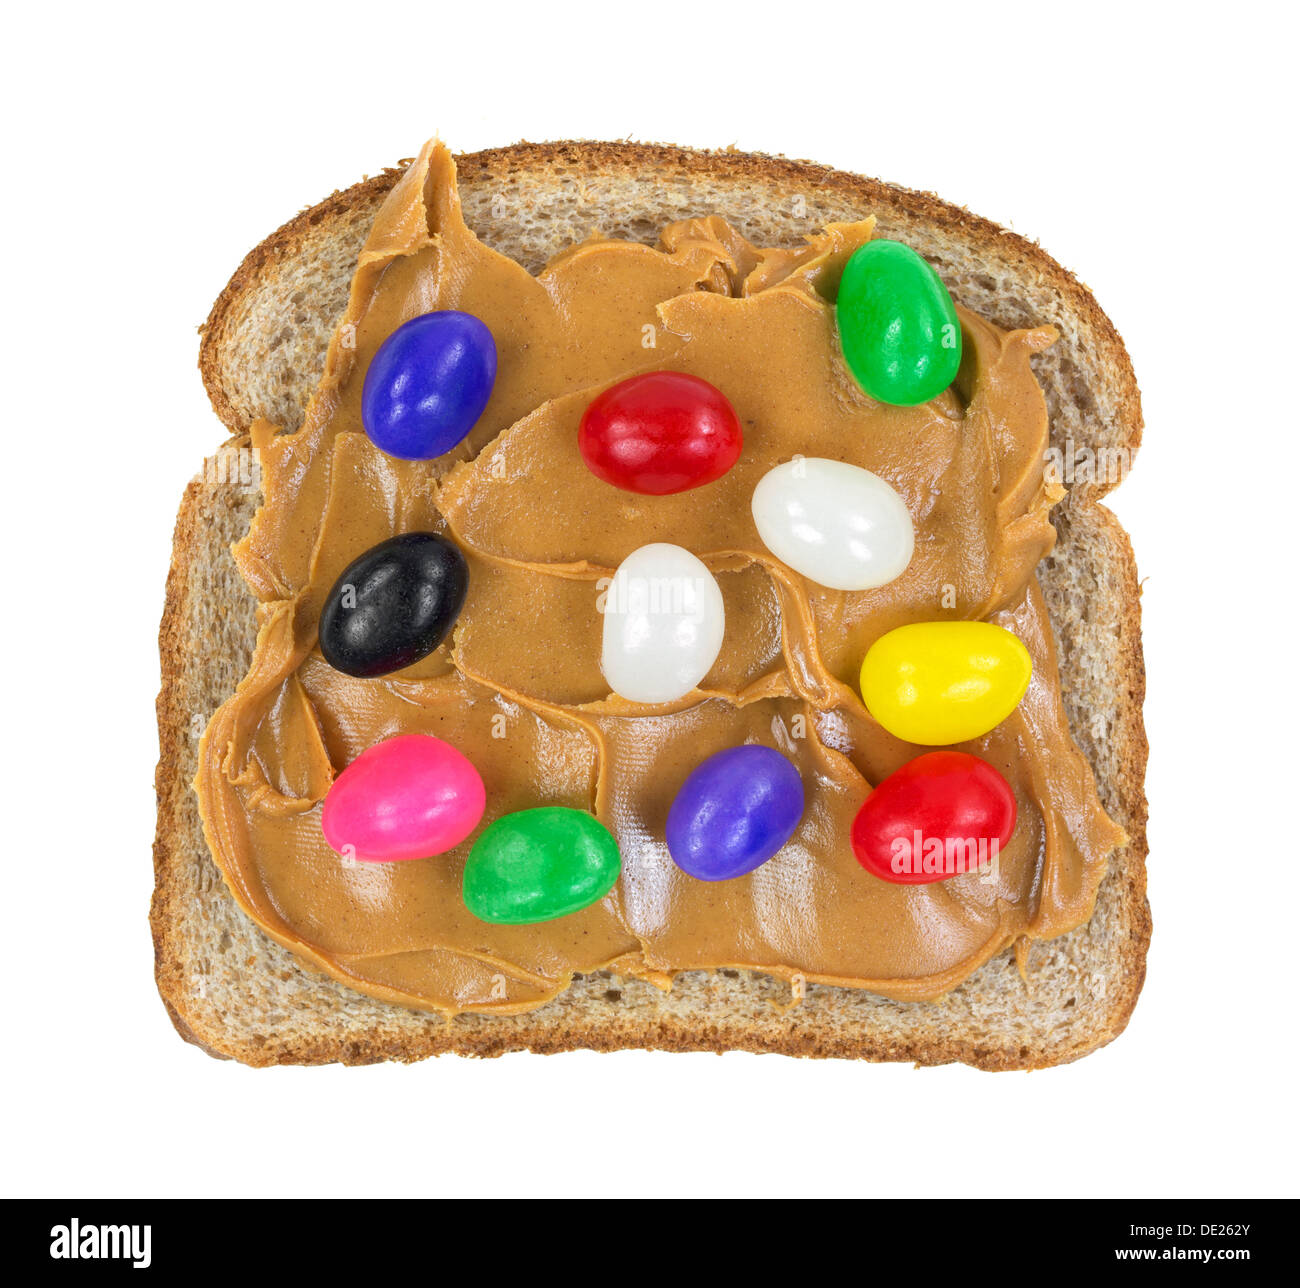 Eine Scheibe Vollkornbrot mit Erdnussbutter und Gummibärchen auf weißem Hintergrund. Stockfoto